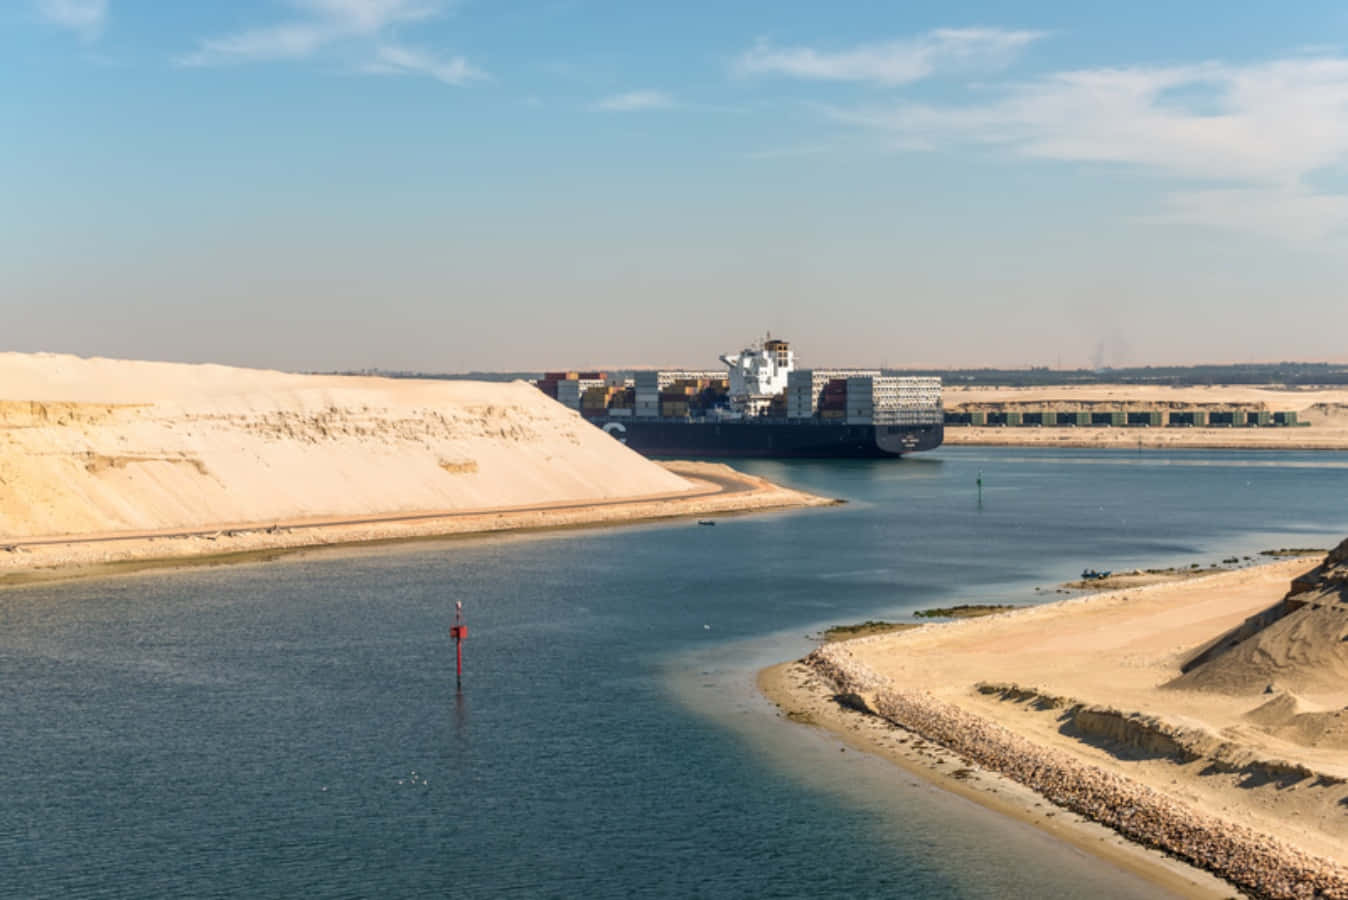 Imagendel Barco Enorme En El Canal De Suez